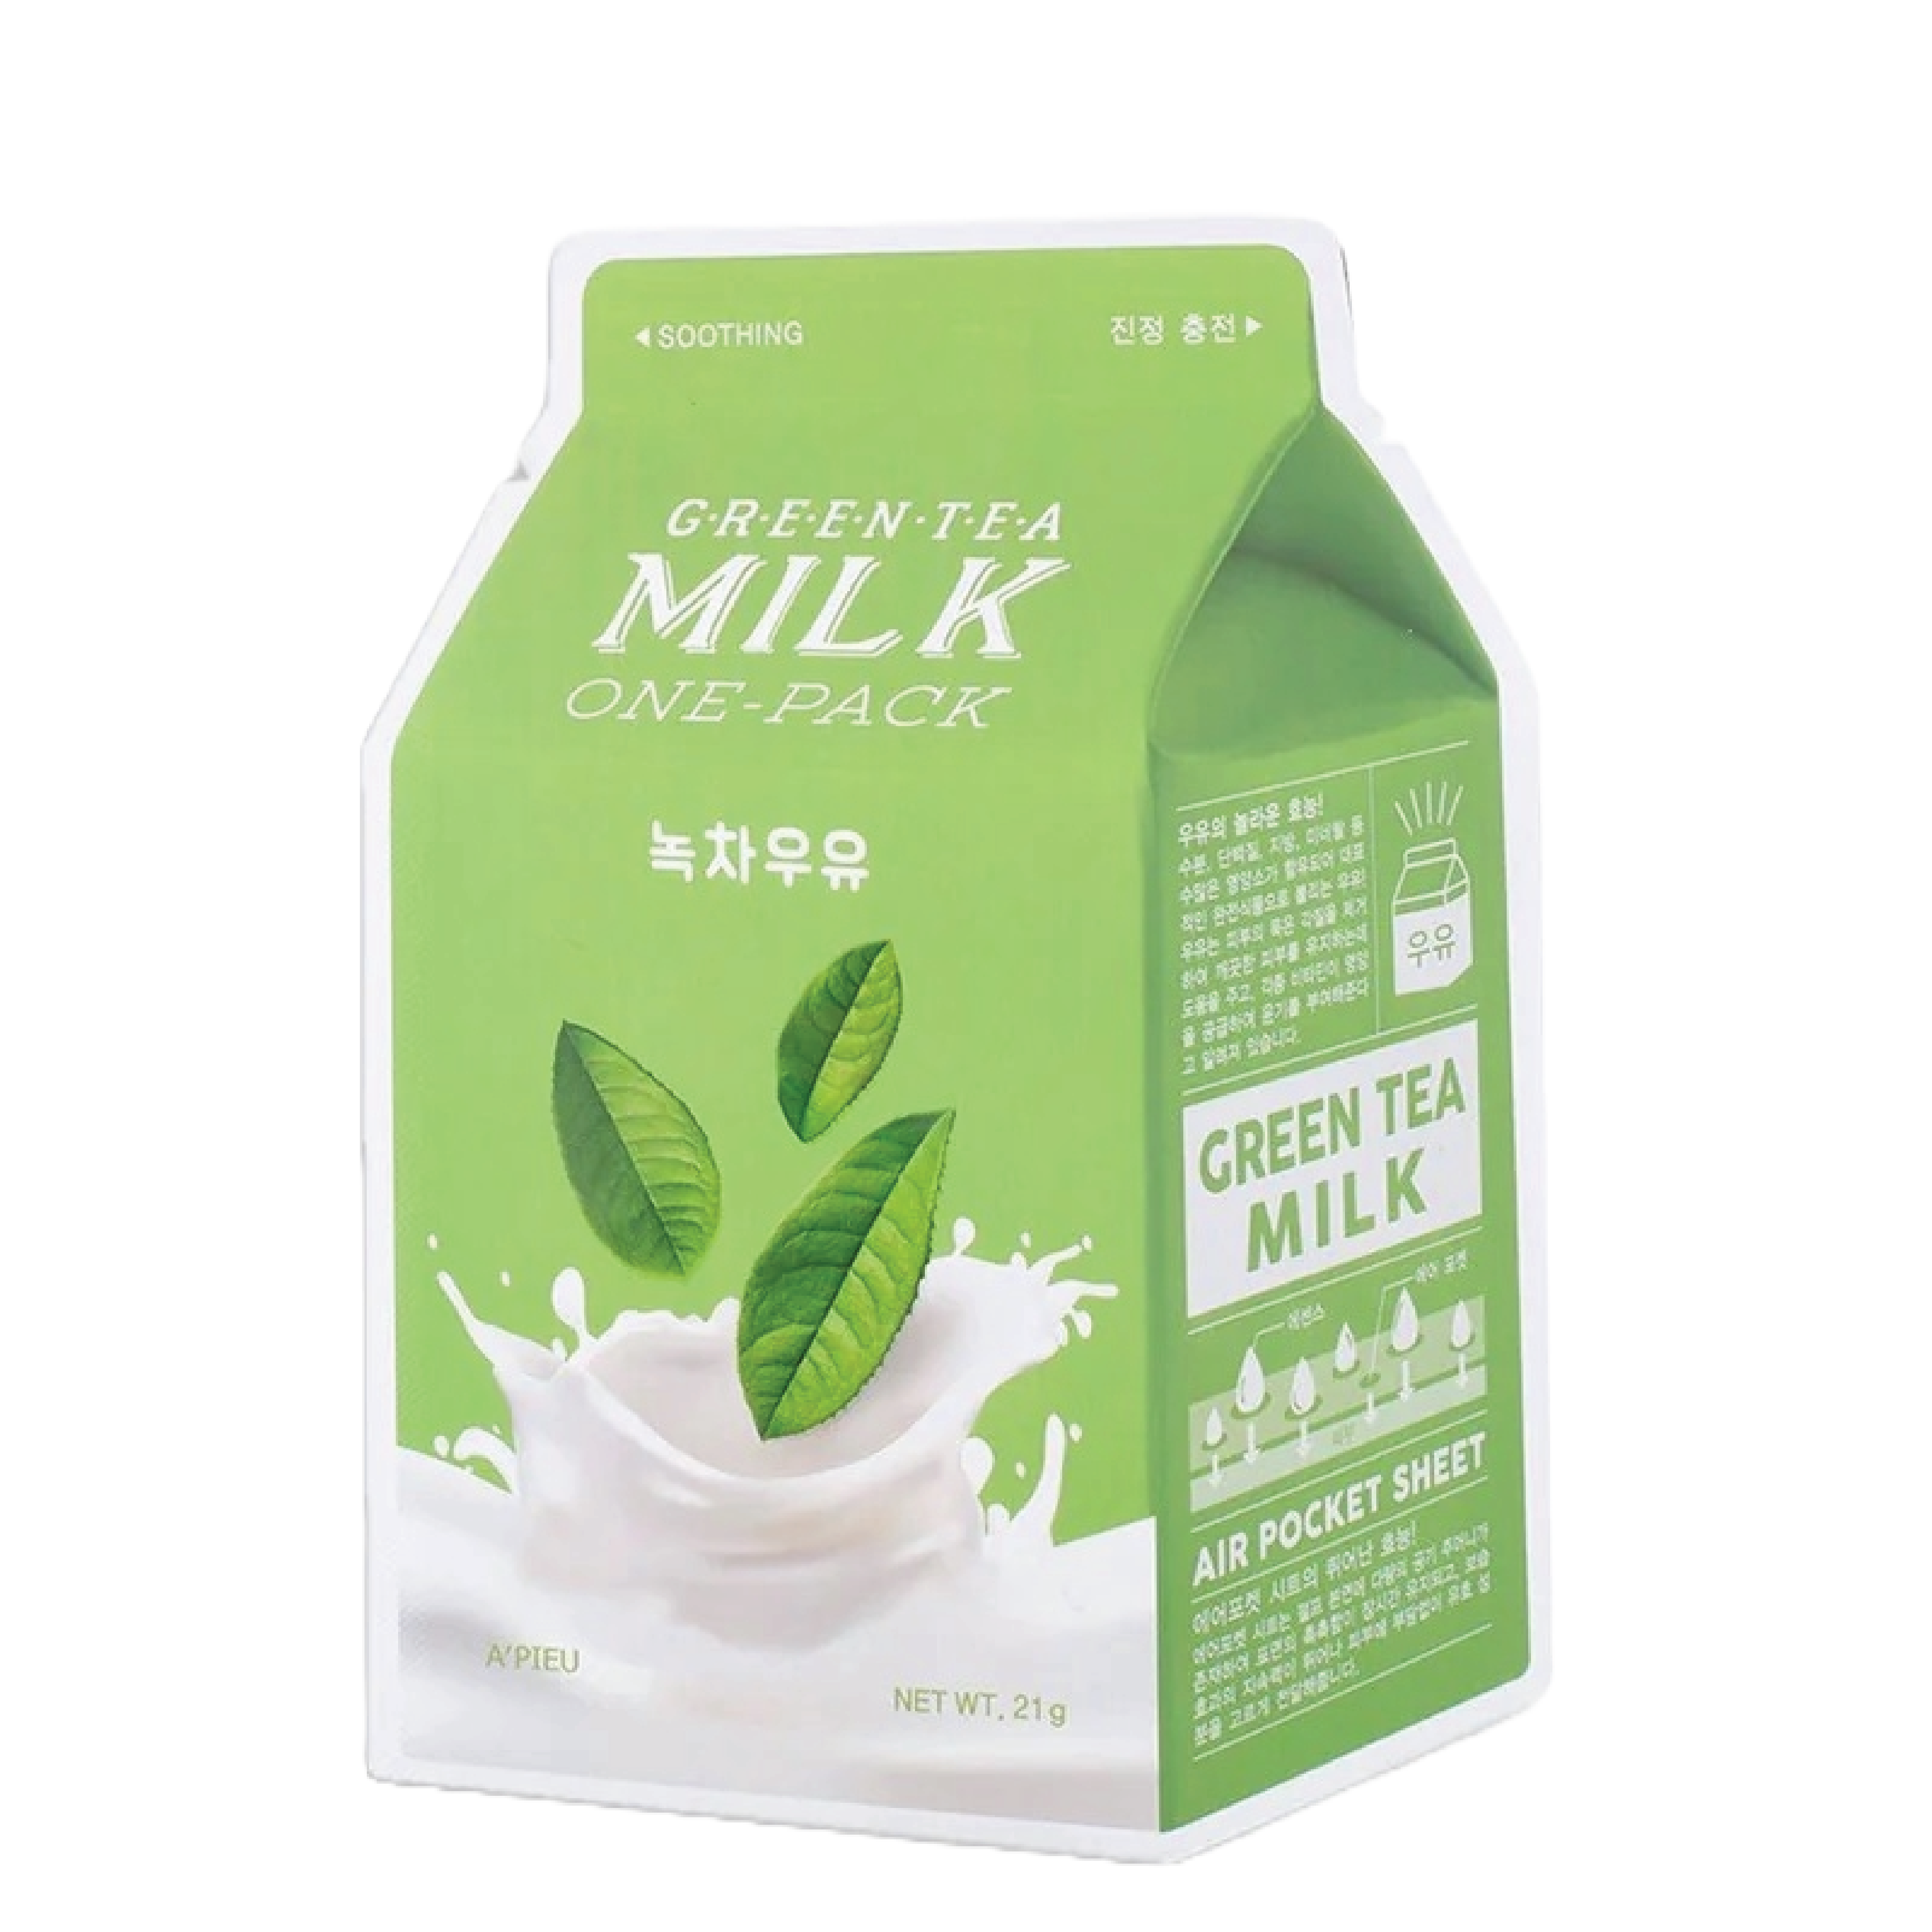 A'pieu Milk One Pack Green Tea Milk